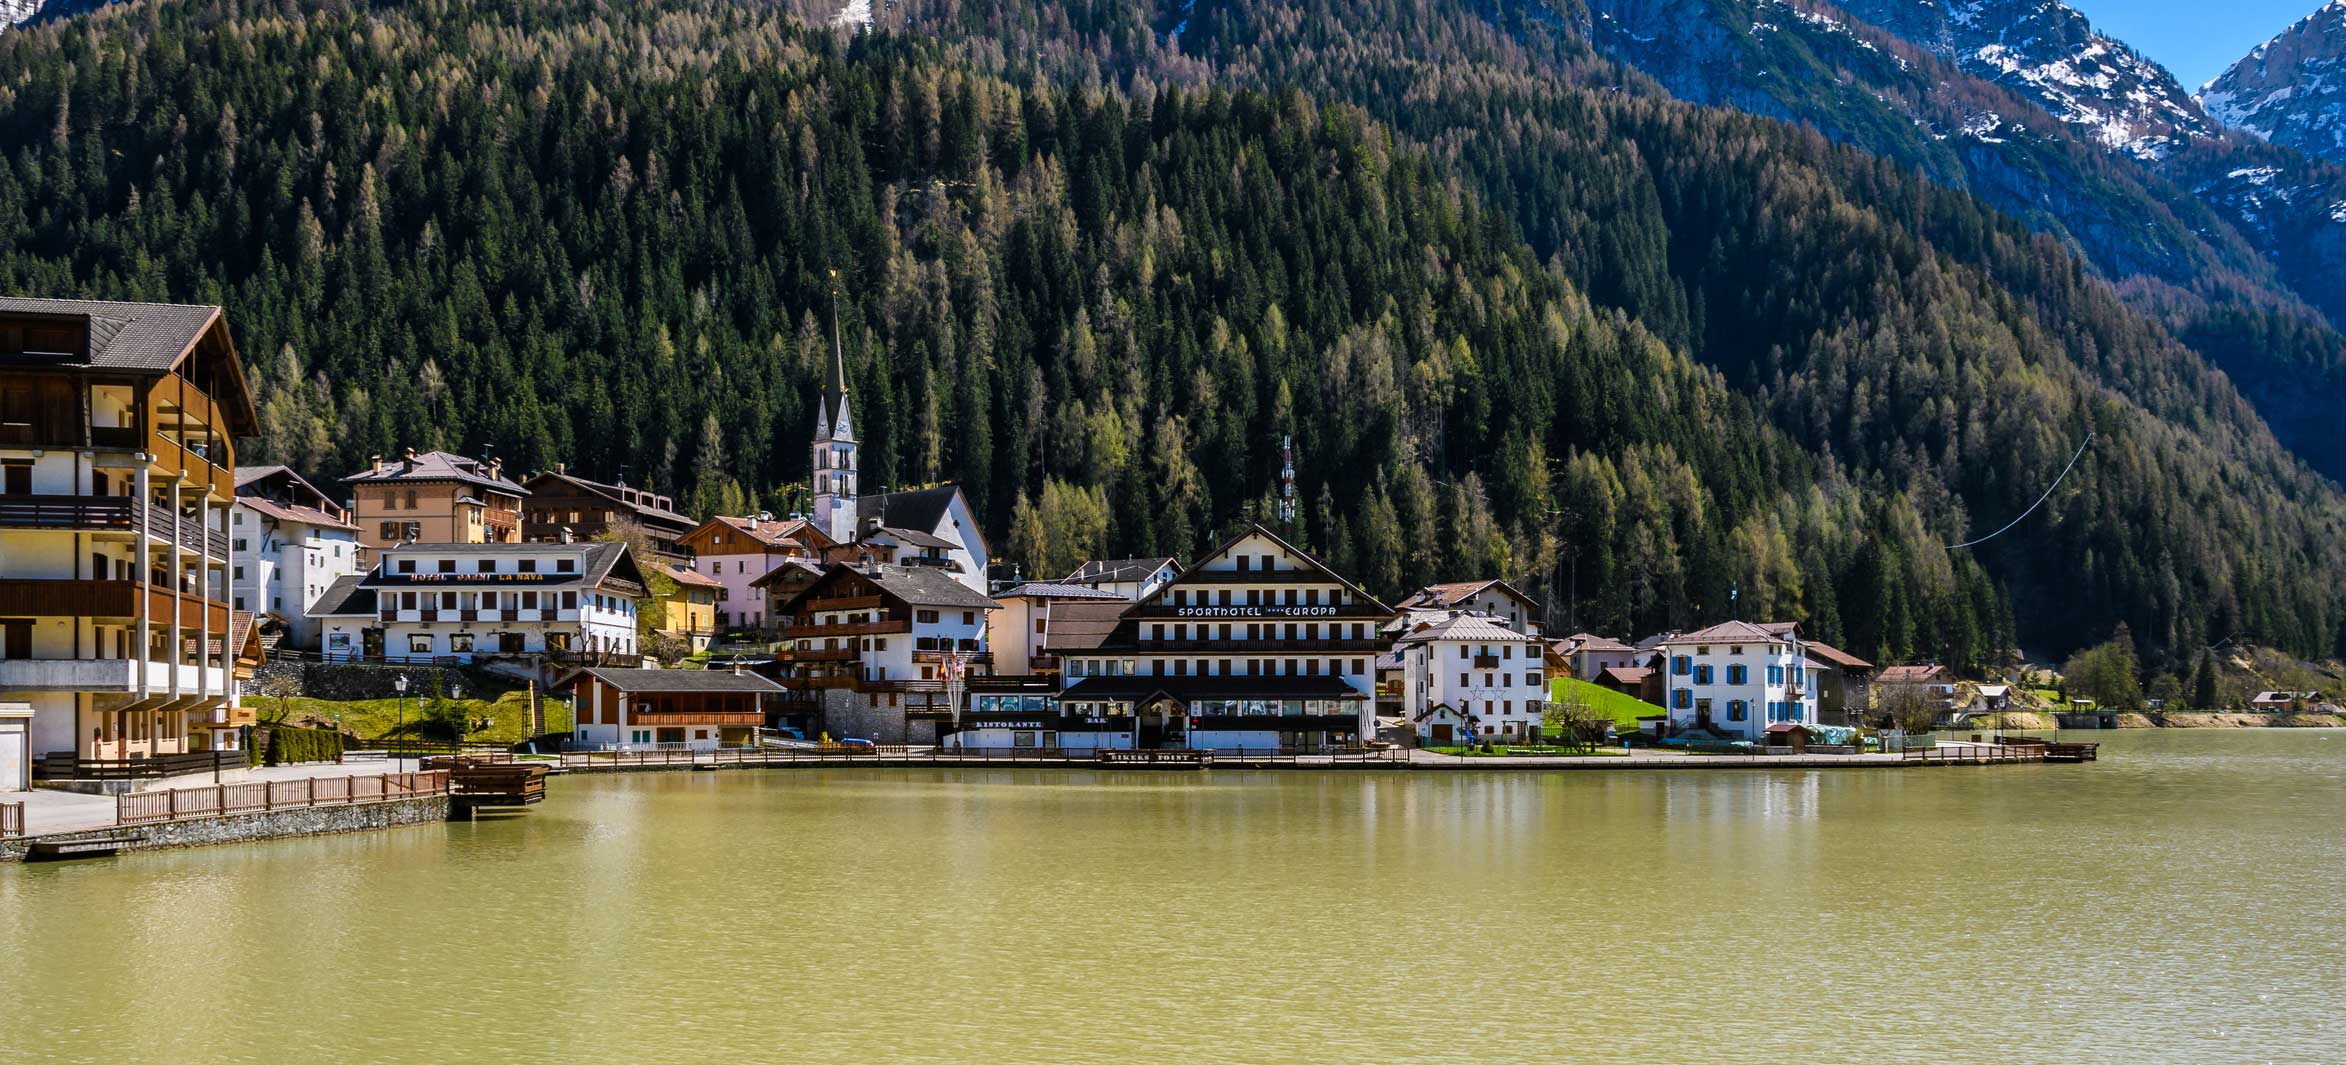 Dolomites, Italy Lakeside Village